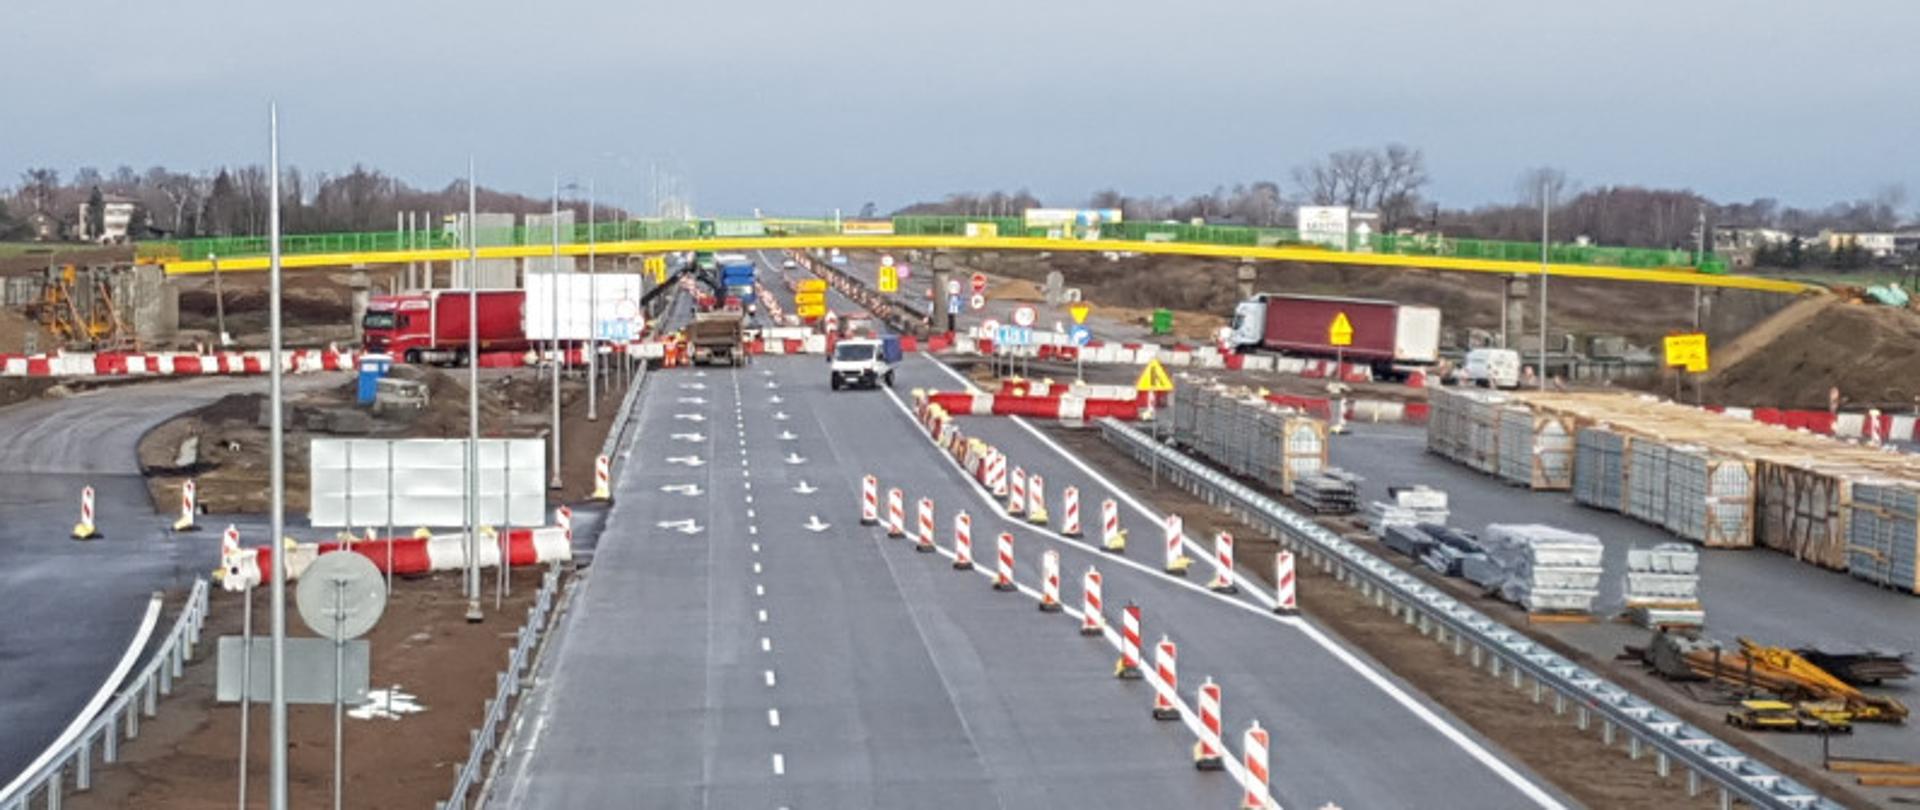 Budowa autostrady A1 węzeł Piotrków Trybunalski Południe, na zdjęciu widoczna tymczasowa organizacja ruchu na jezdni zachodniej.